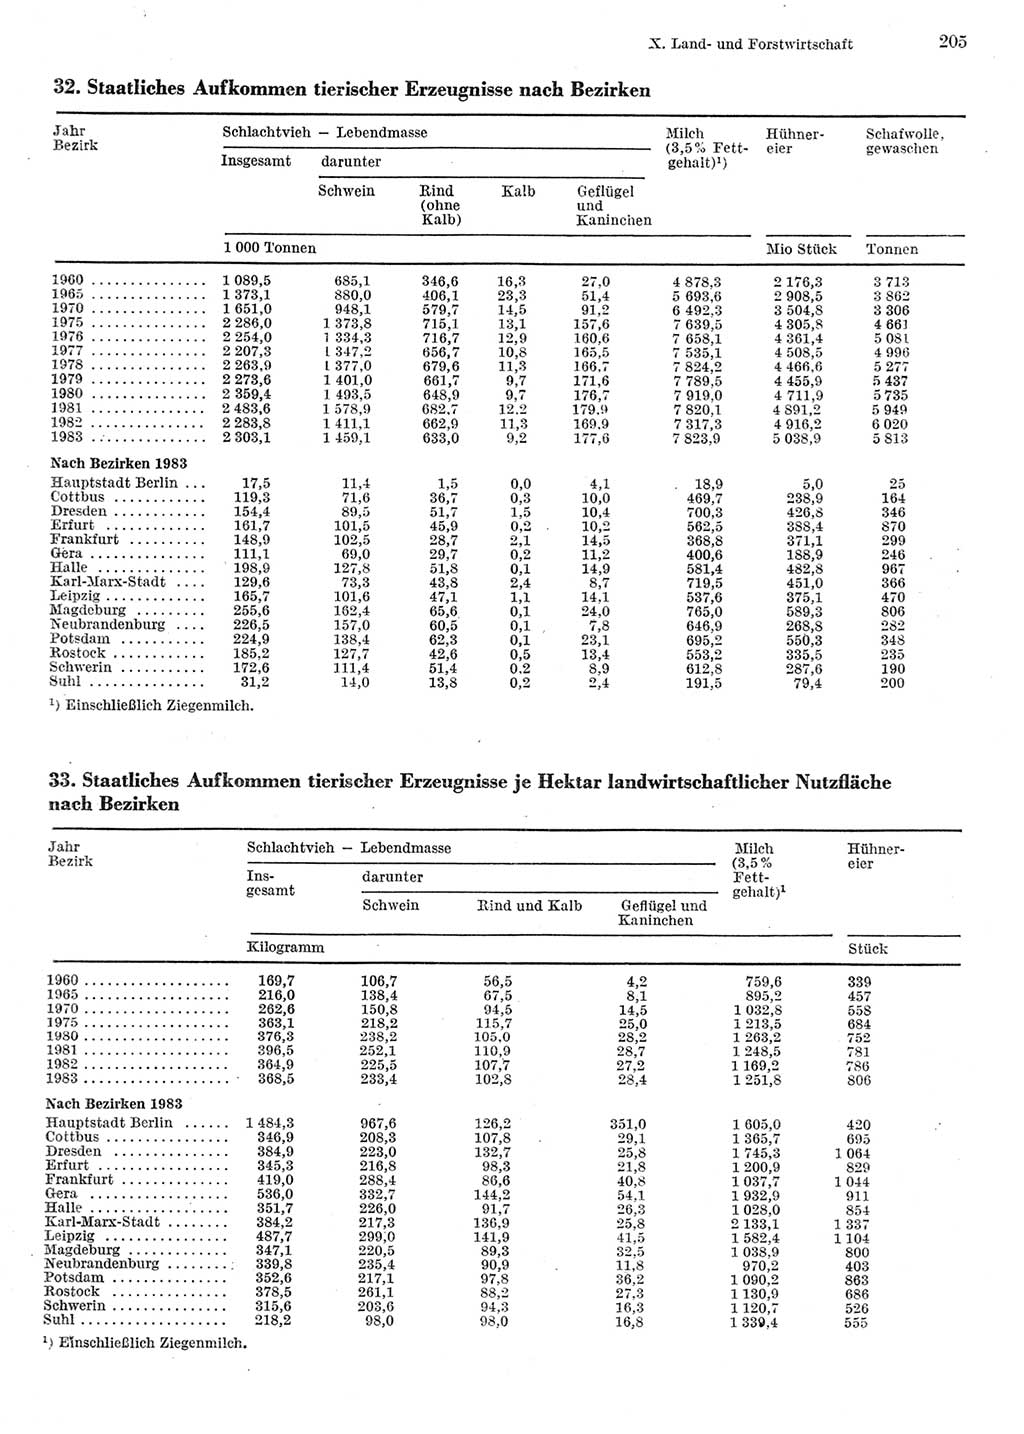 Statistisches Jahrbuch der Deutschen Demokratischen Republik (DDR) 1984, Seite 205 (Stat. Jb. DDR 1984, S. 205)